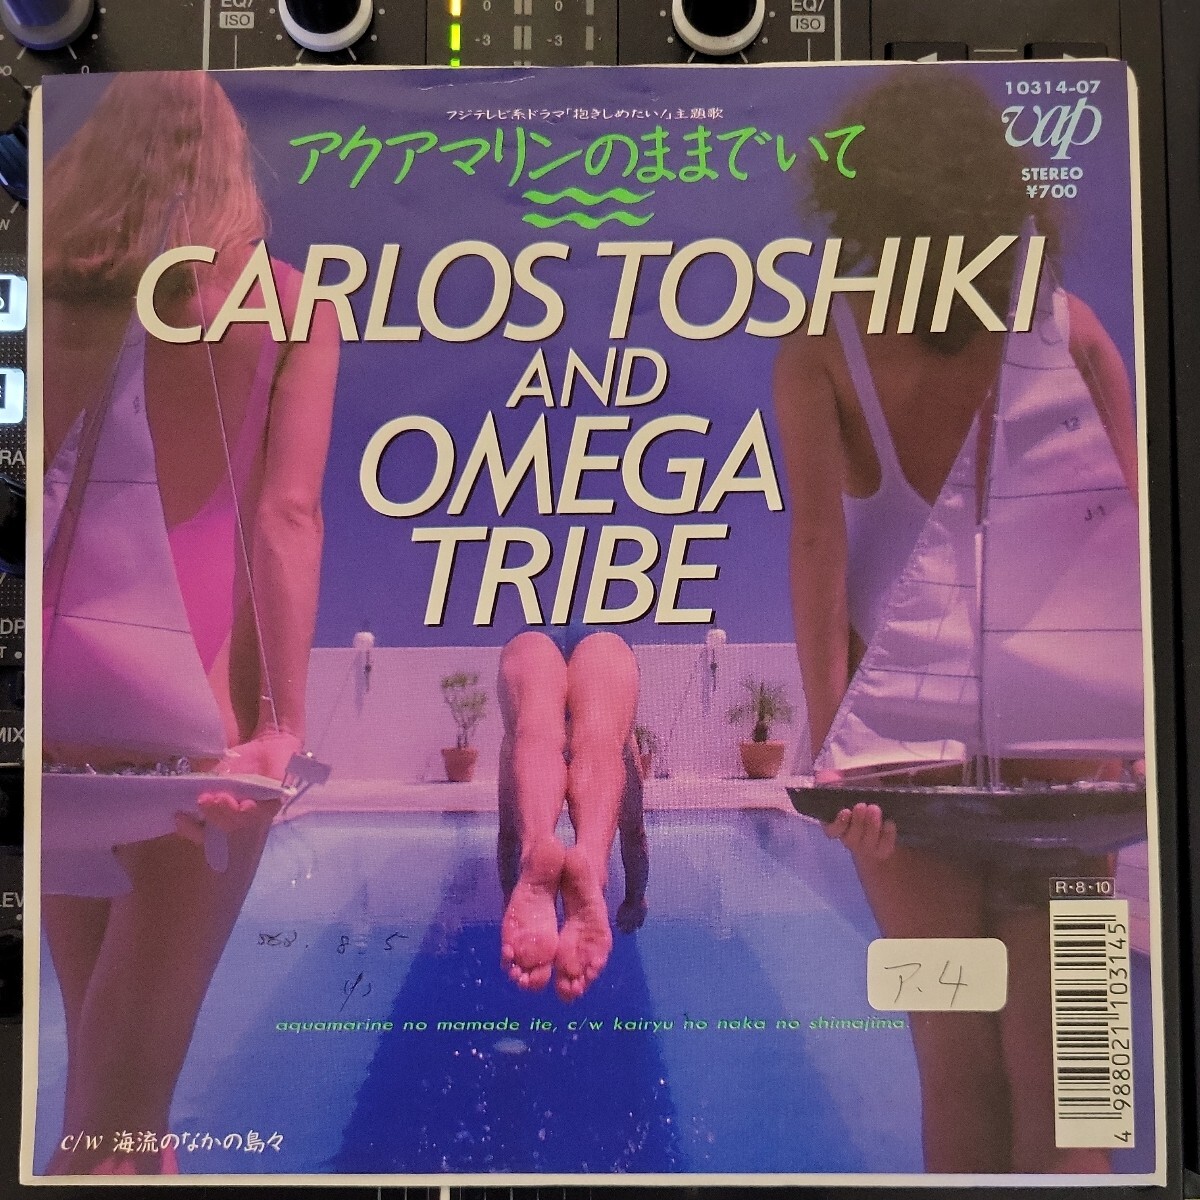 白ラベル 見本盤 7inch カルロス・トシキ & オメガ・トライブ - アクアマリンのままでいて / 海流のなかの島々 の画像1